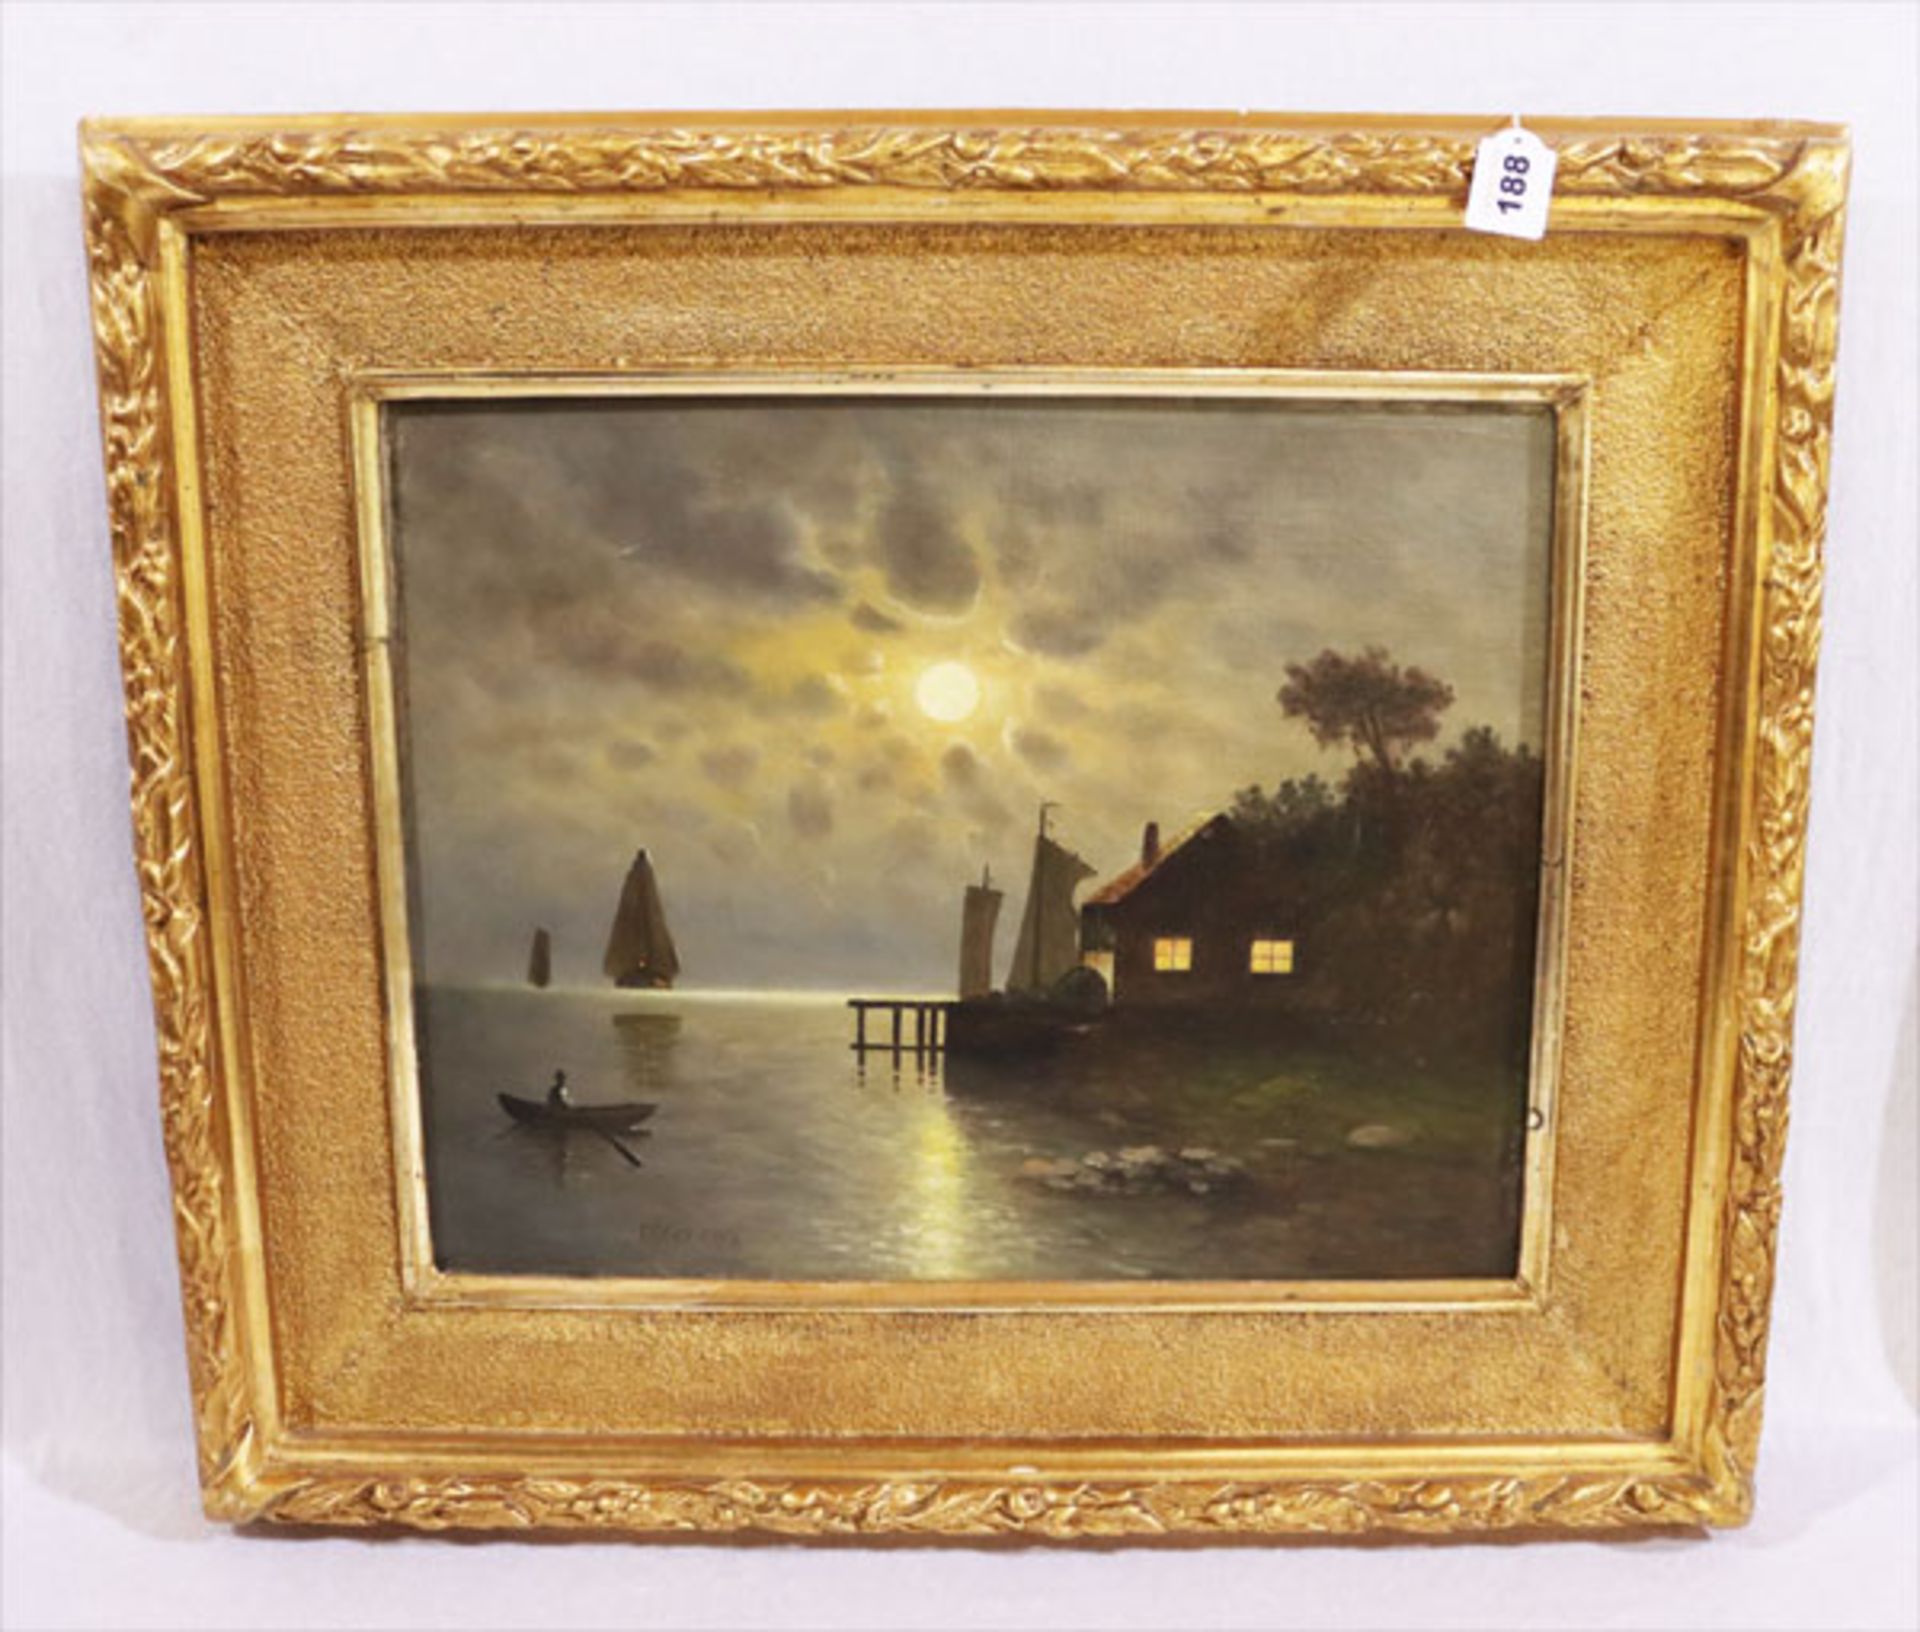 Gemälde ÖL/LW 'Nächtliche Szene mit Haus am See und Segelboot im Mondschein', signiert Moser,